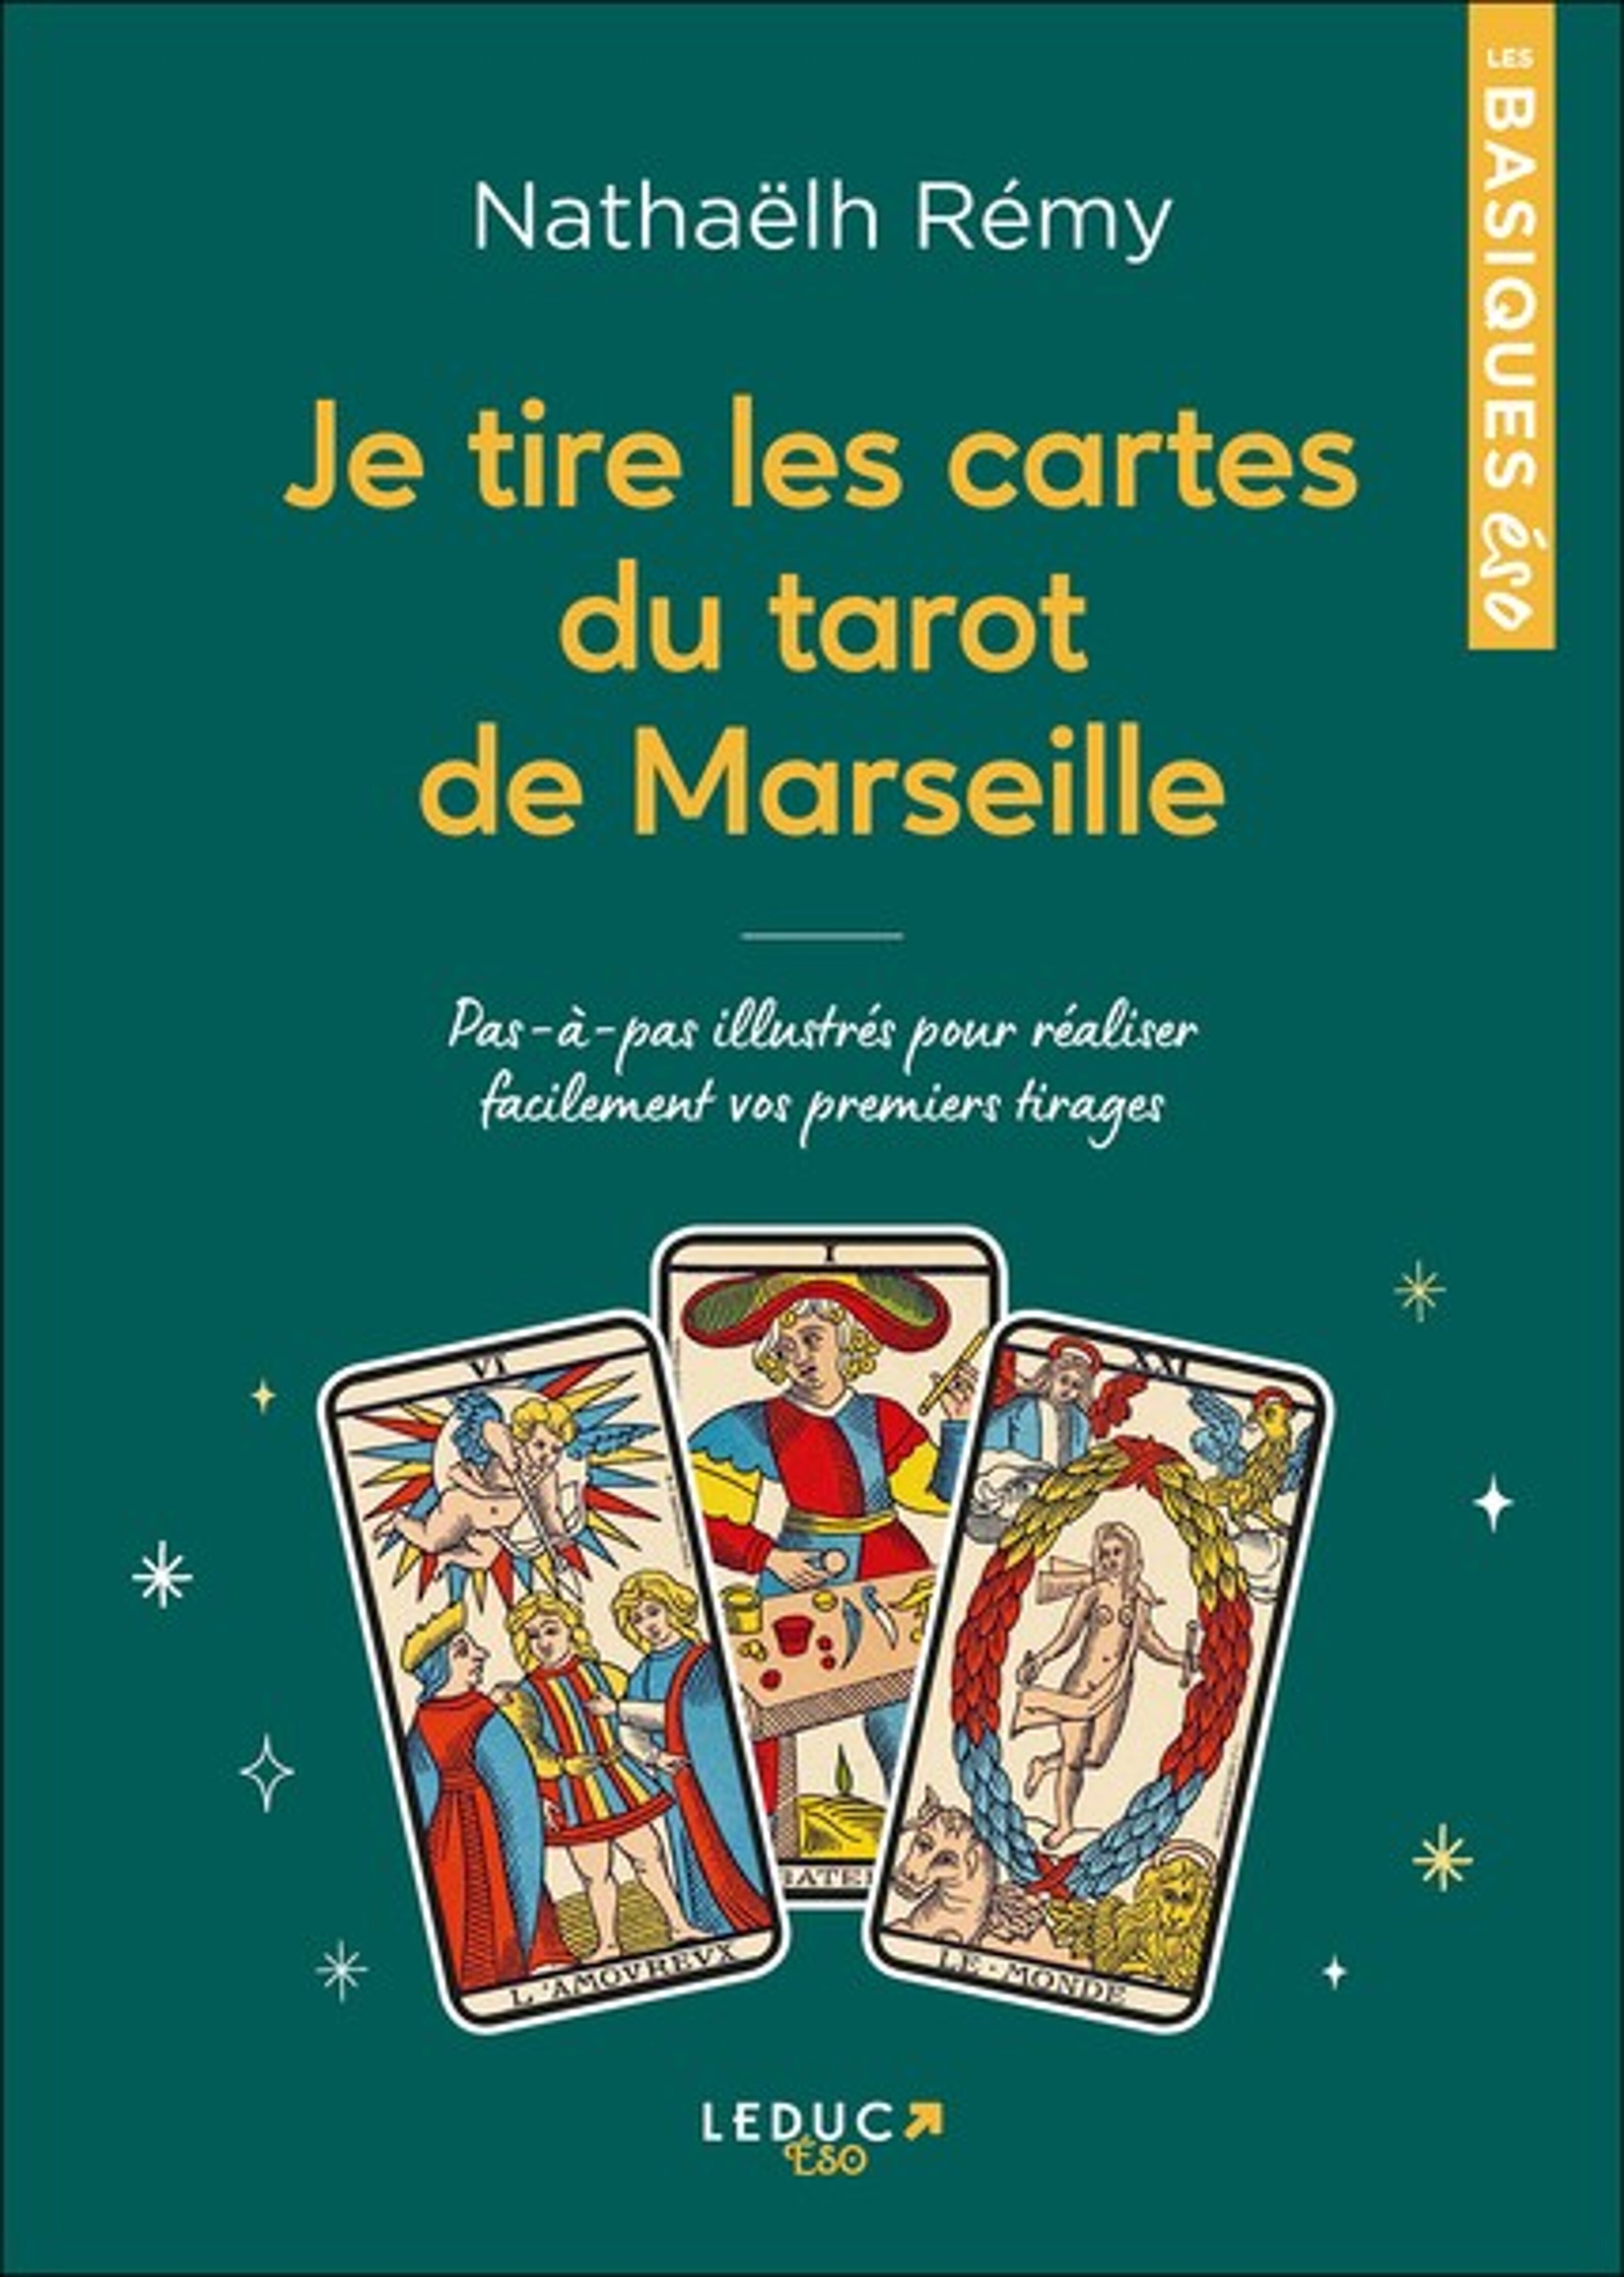 Ma bible du tarot de Marseille - Le guide de référence illustré - Nathaëlh  Remy (EAN13 : 9791028518783)